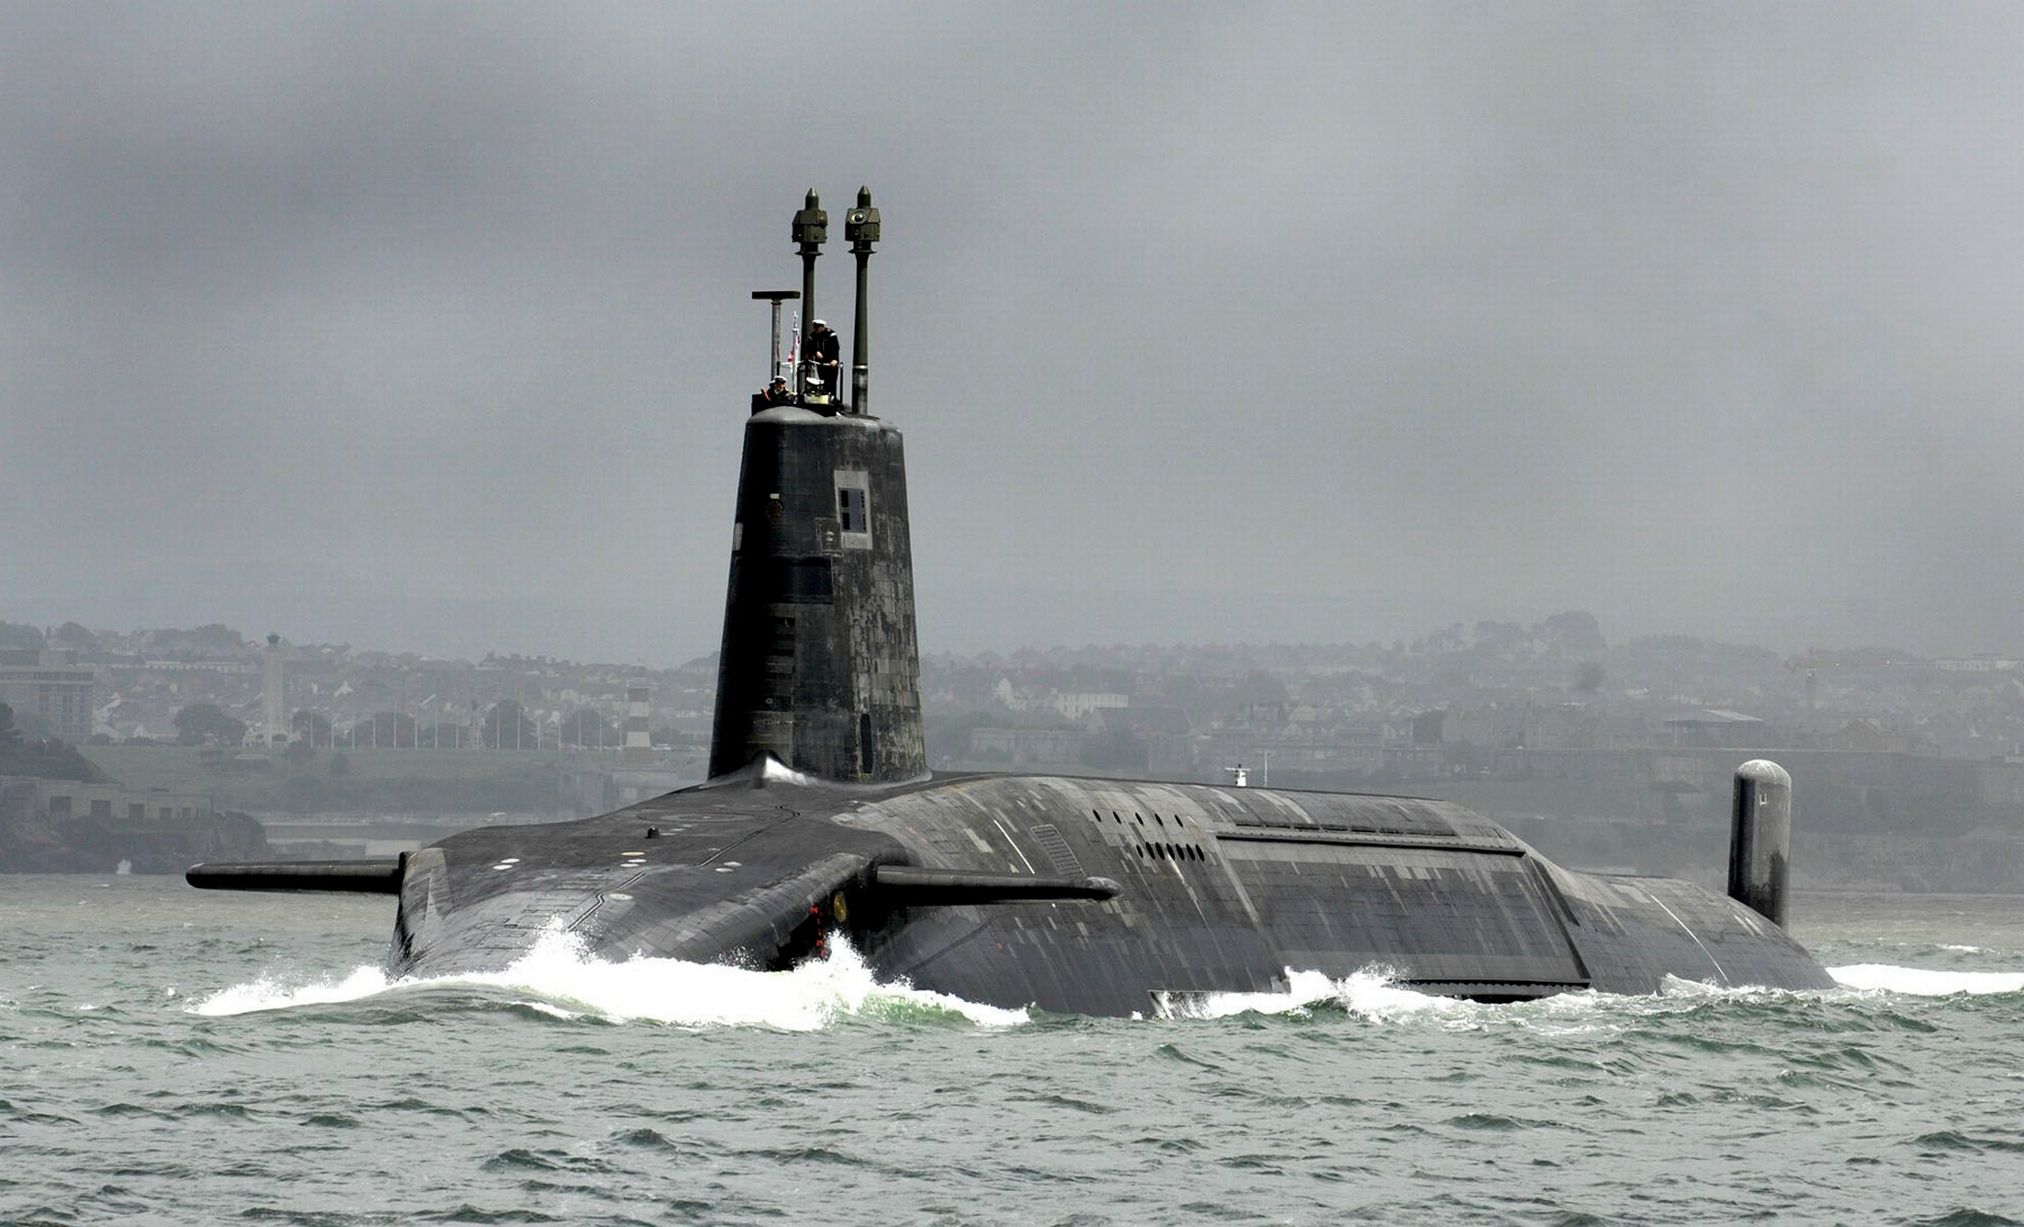 Brytyjczycy użyli kleju do naprawy krążownika o napędzie atomowym HMS Vanguard systemu Trident, który może przenosić rakiety balistyczne z głowicami jądrowymi